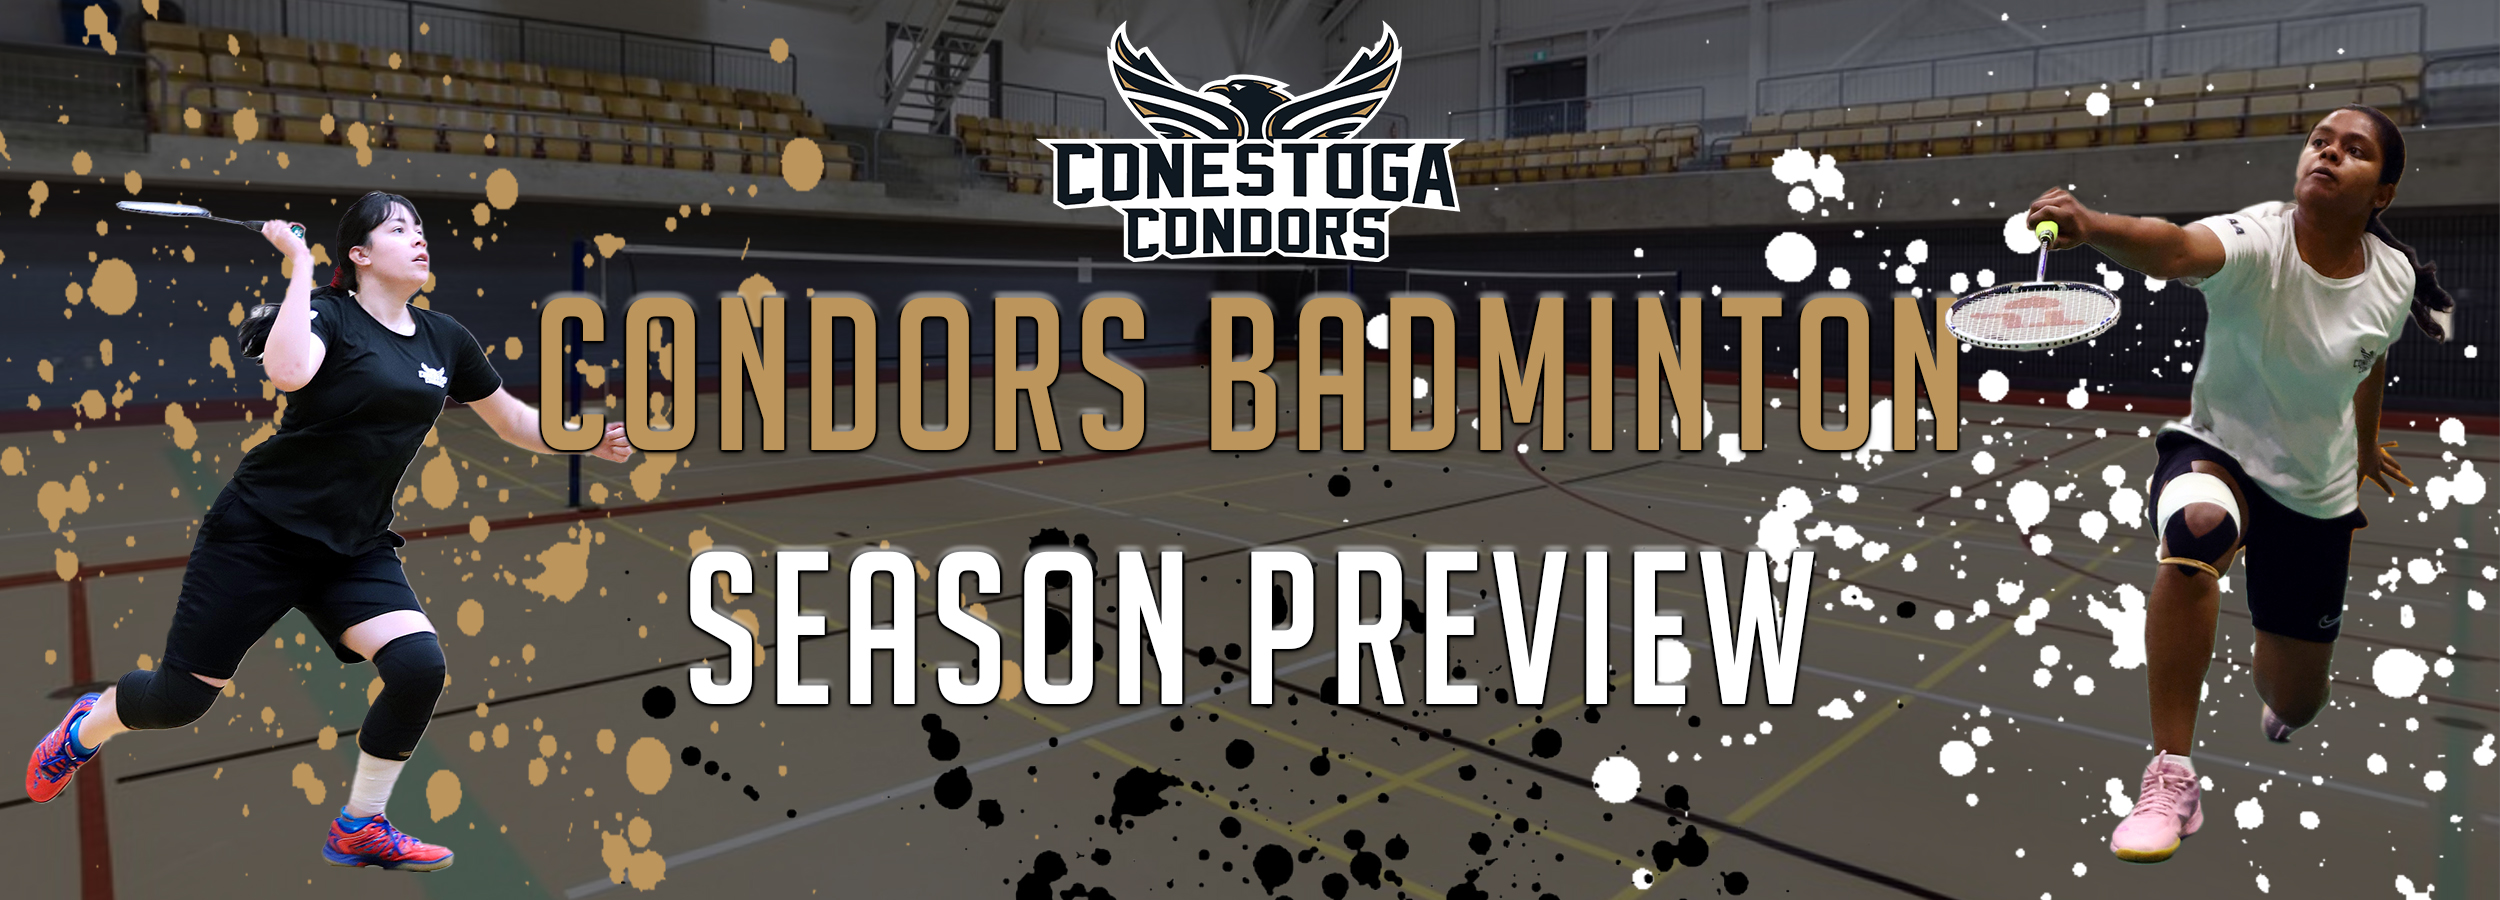 A headline banner reading Condors Badminton Season Preview. 